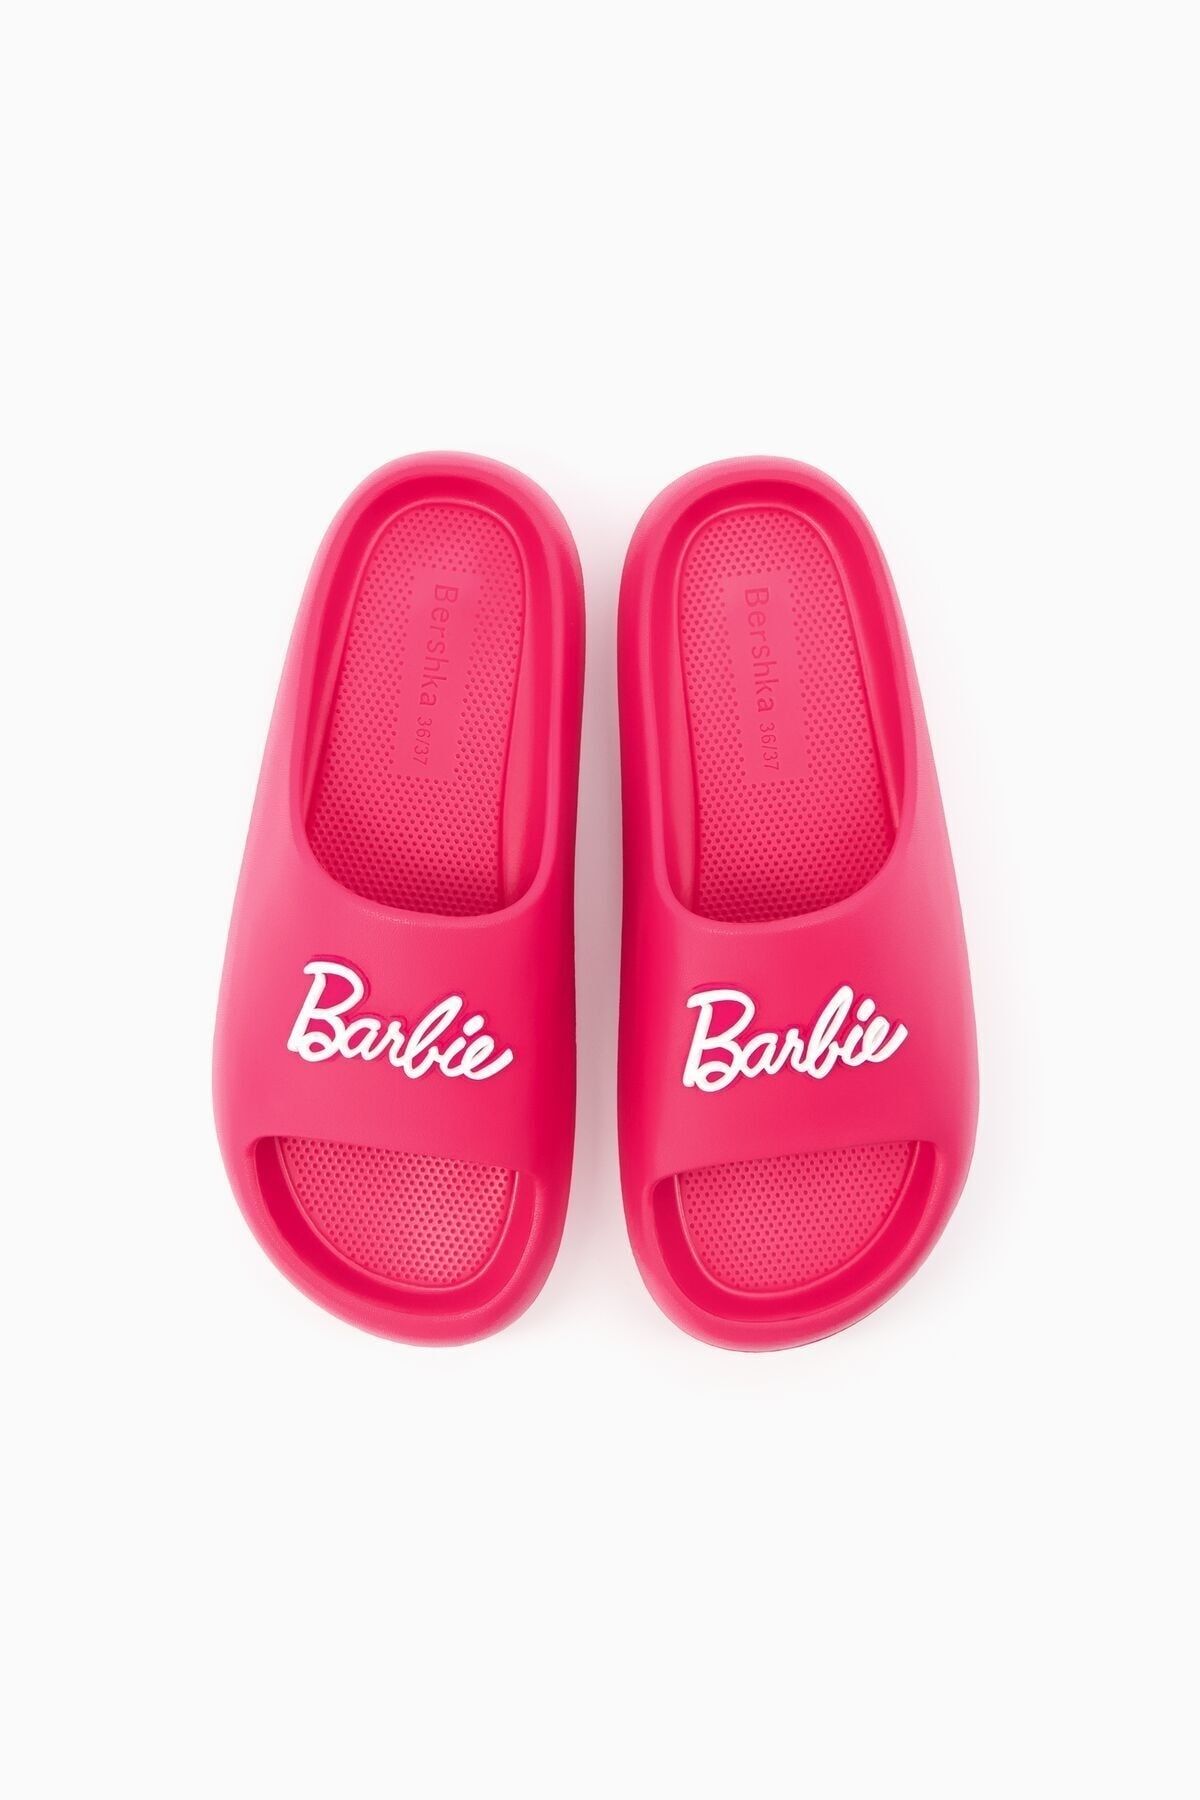 Bershka Barbie düz bantlı sandalet Fiyatı, Yorumları - Trendyol